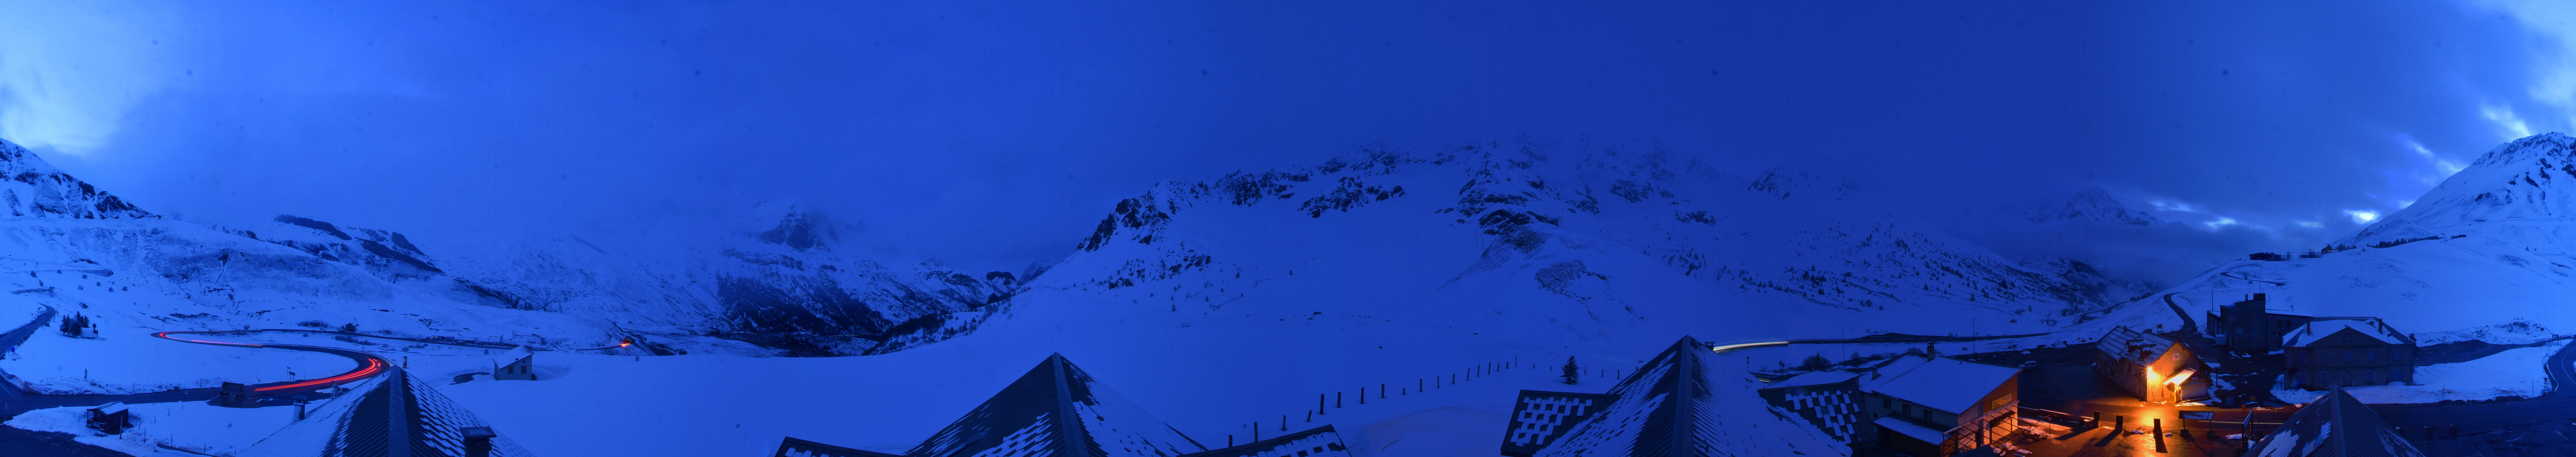 Webcam du col du Lautaret sur la D1091, au niveau du plus haut col français ouvert à la circulation automobile en hiver